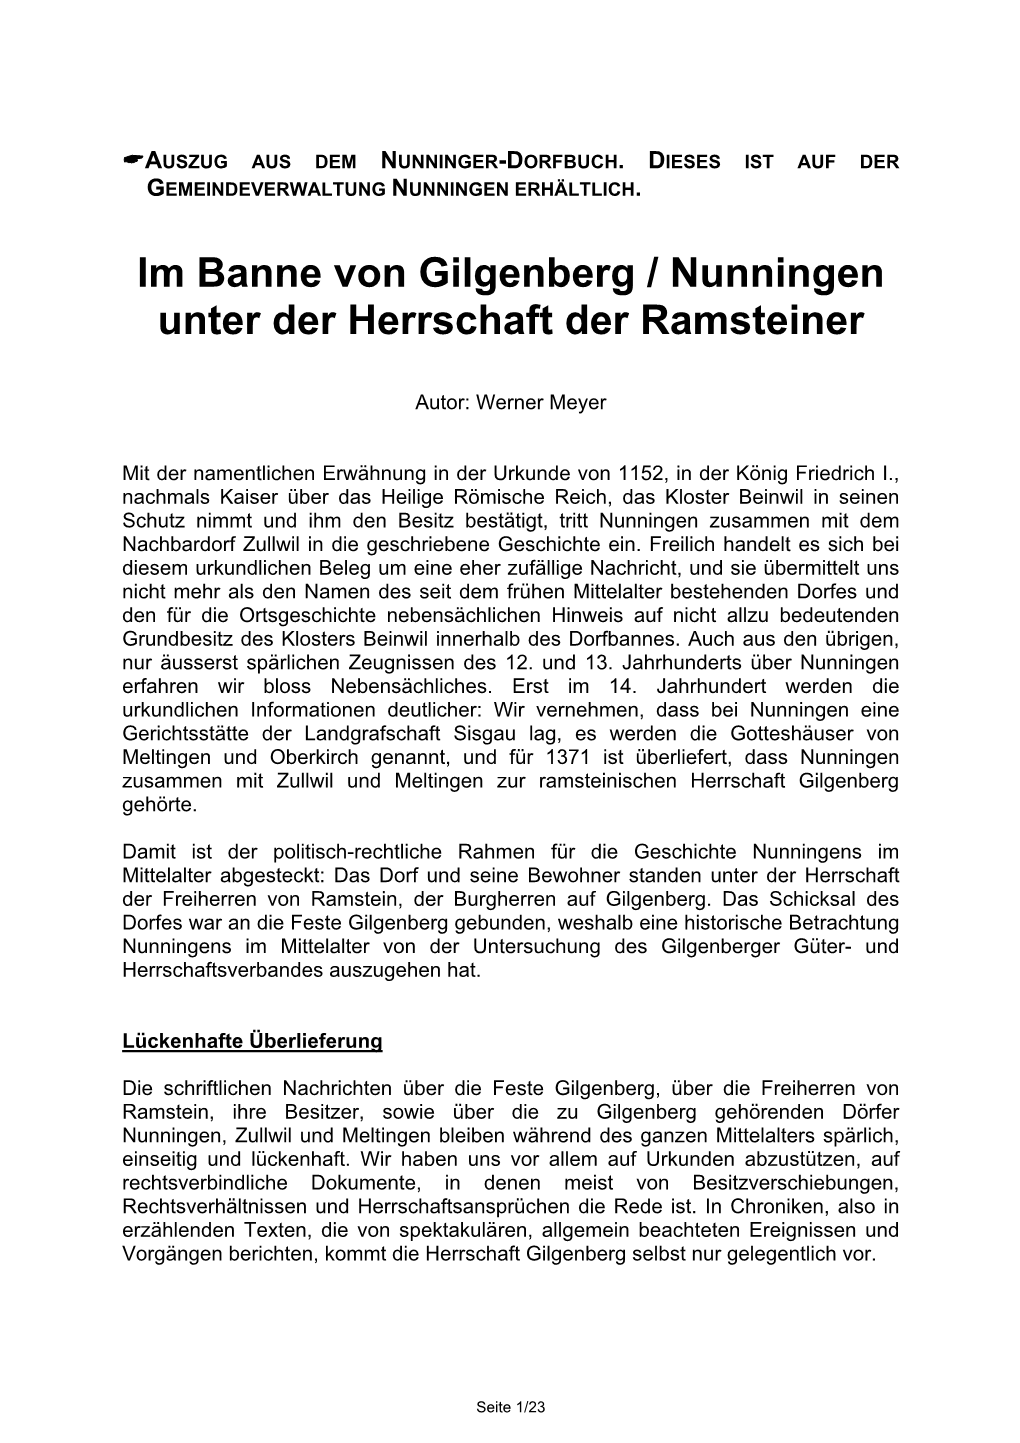 Im Banne Von Gilgenberg / Nunningen Unter Der Herrschaft Der Ramsteiner